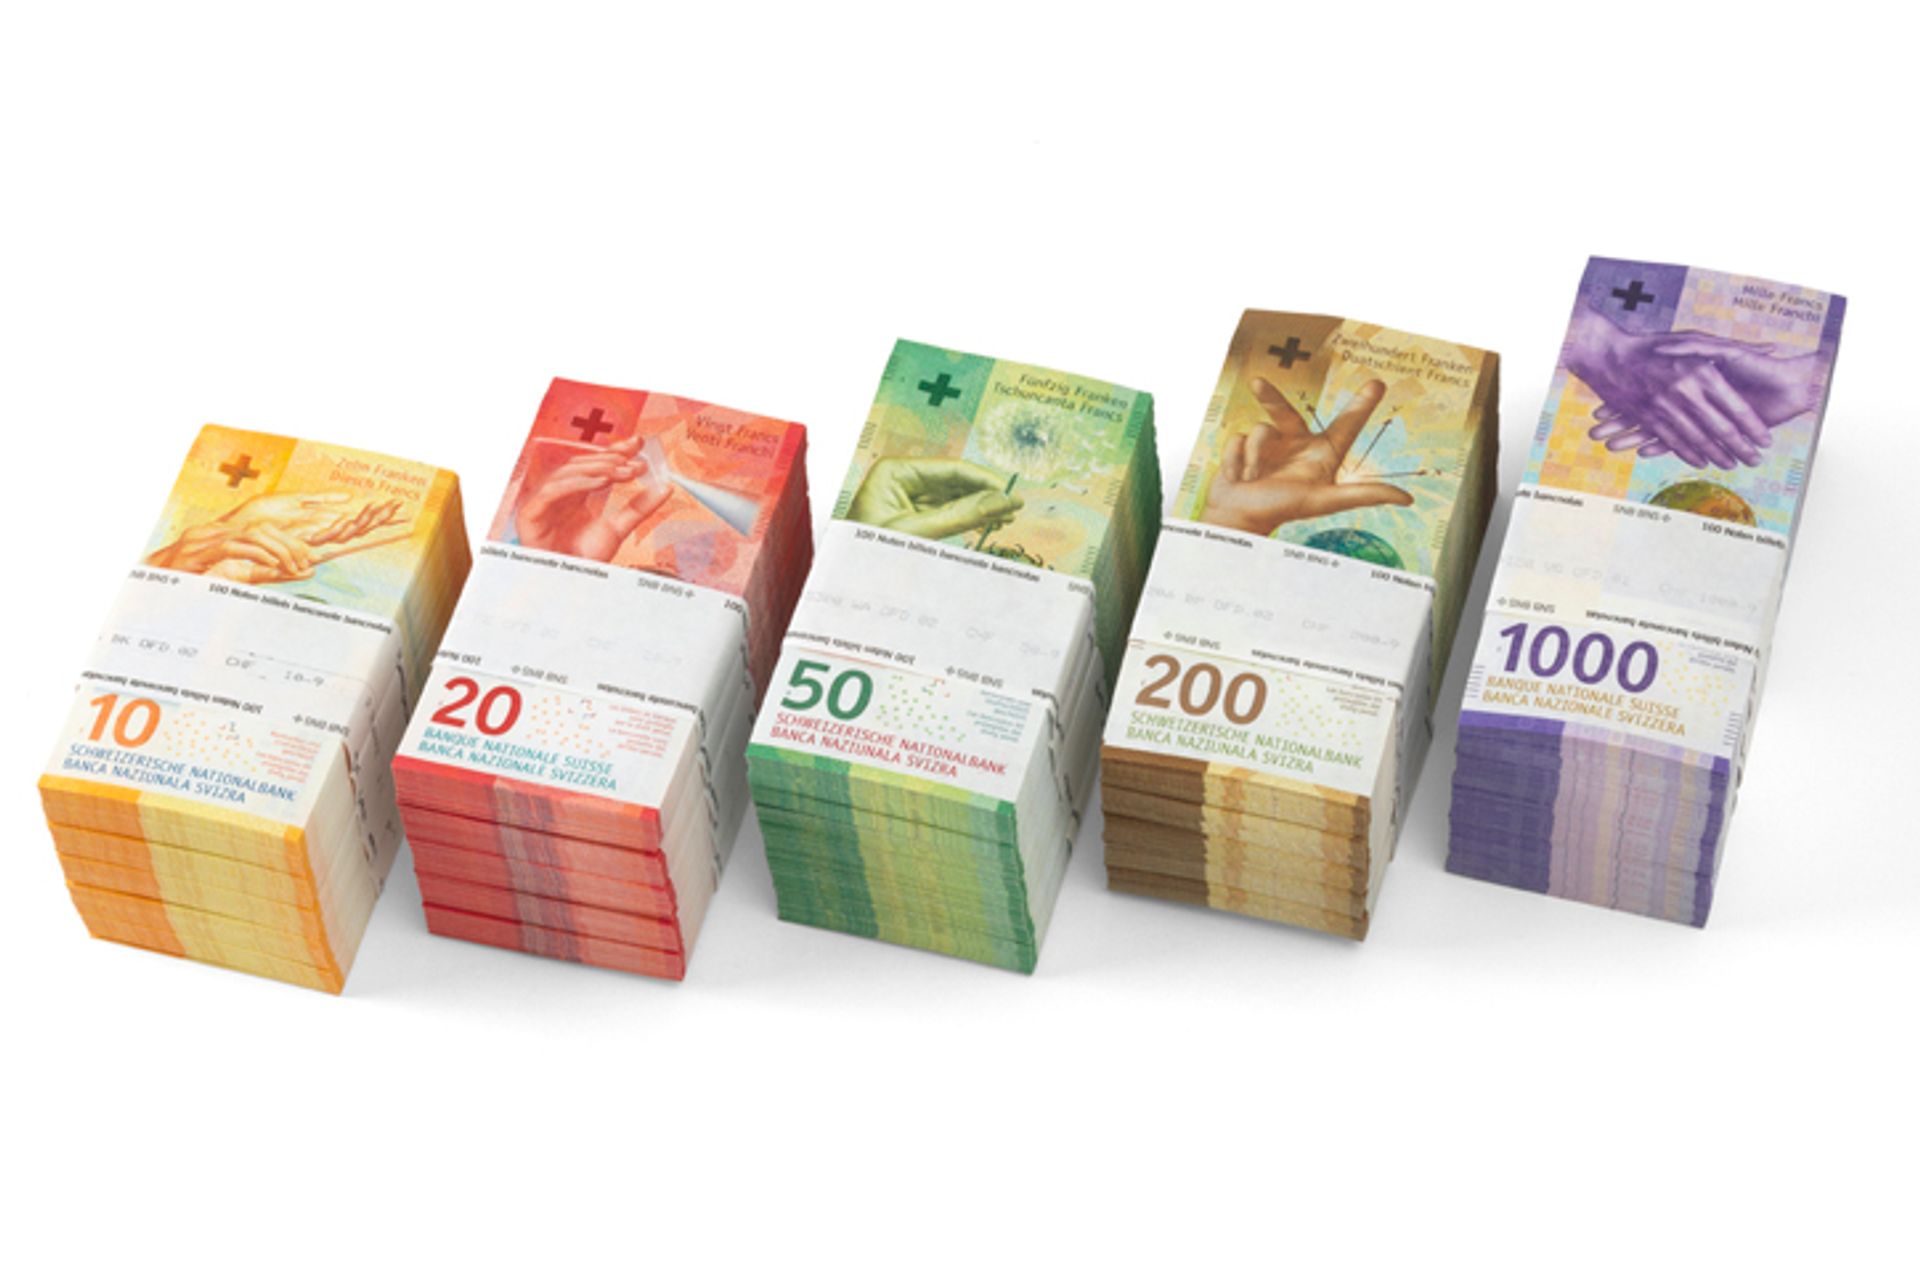 Mazzette di banconote svizzere da 10, 20, 50, 200 e 1000 franchi